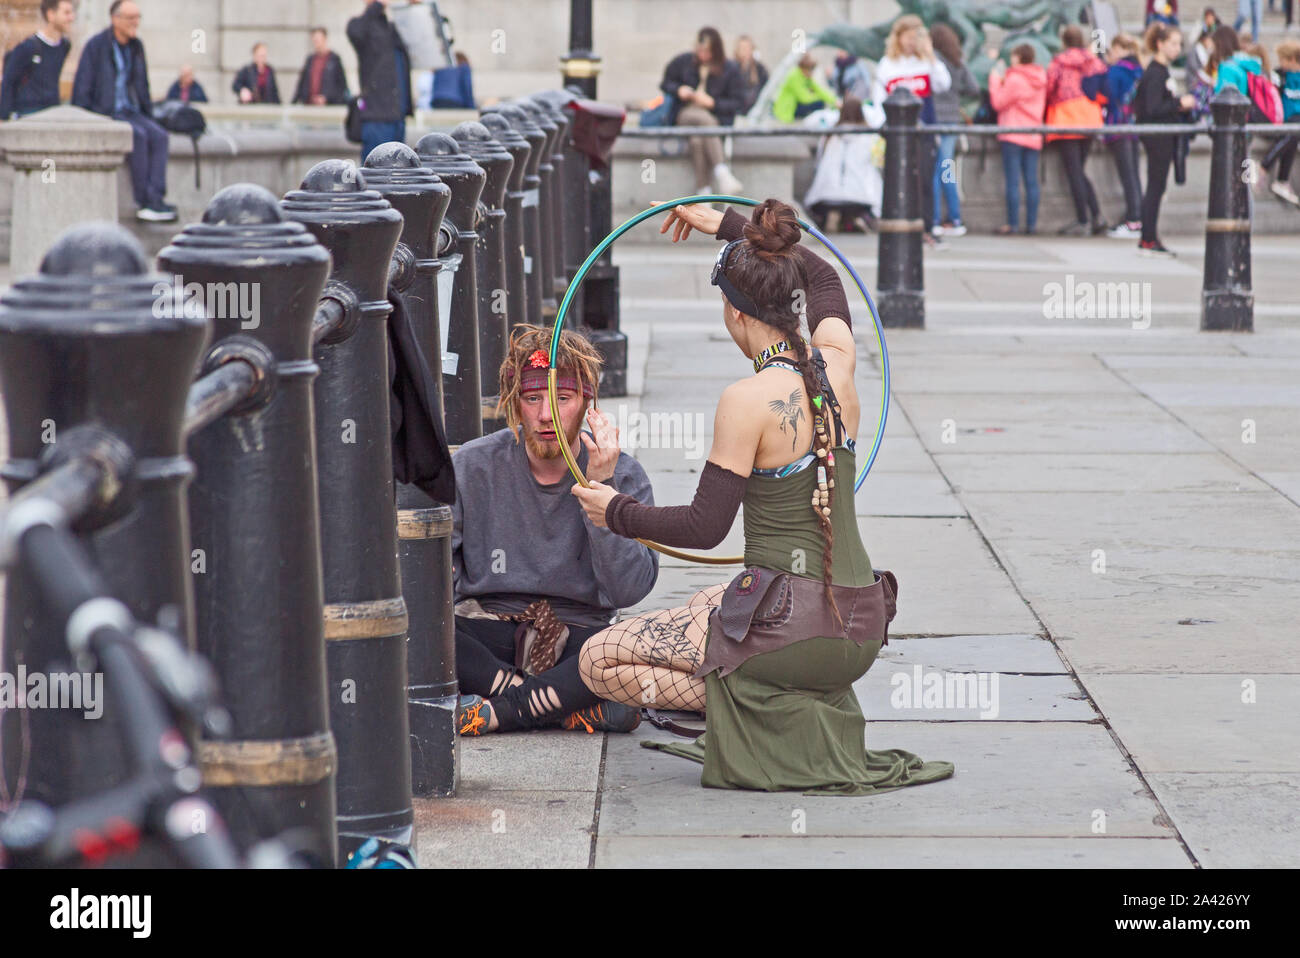 Le premier jour de l'extinction de la rébellion de l'occupation du Trafalgar Square. Un manifestant en utilisant son hula hoop pour gagner l'attention de son ami endormi. Banque D'Images